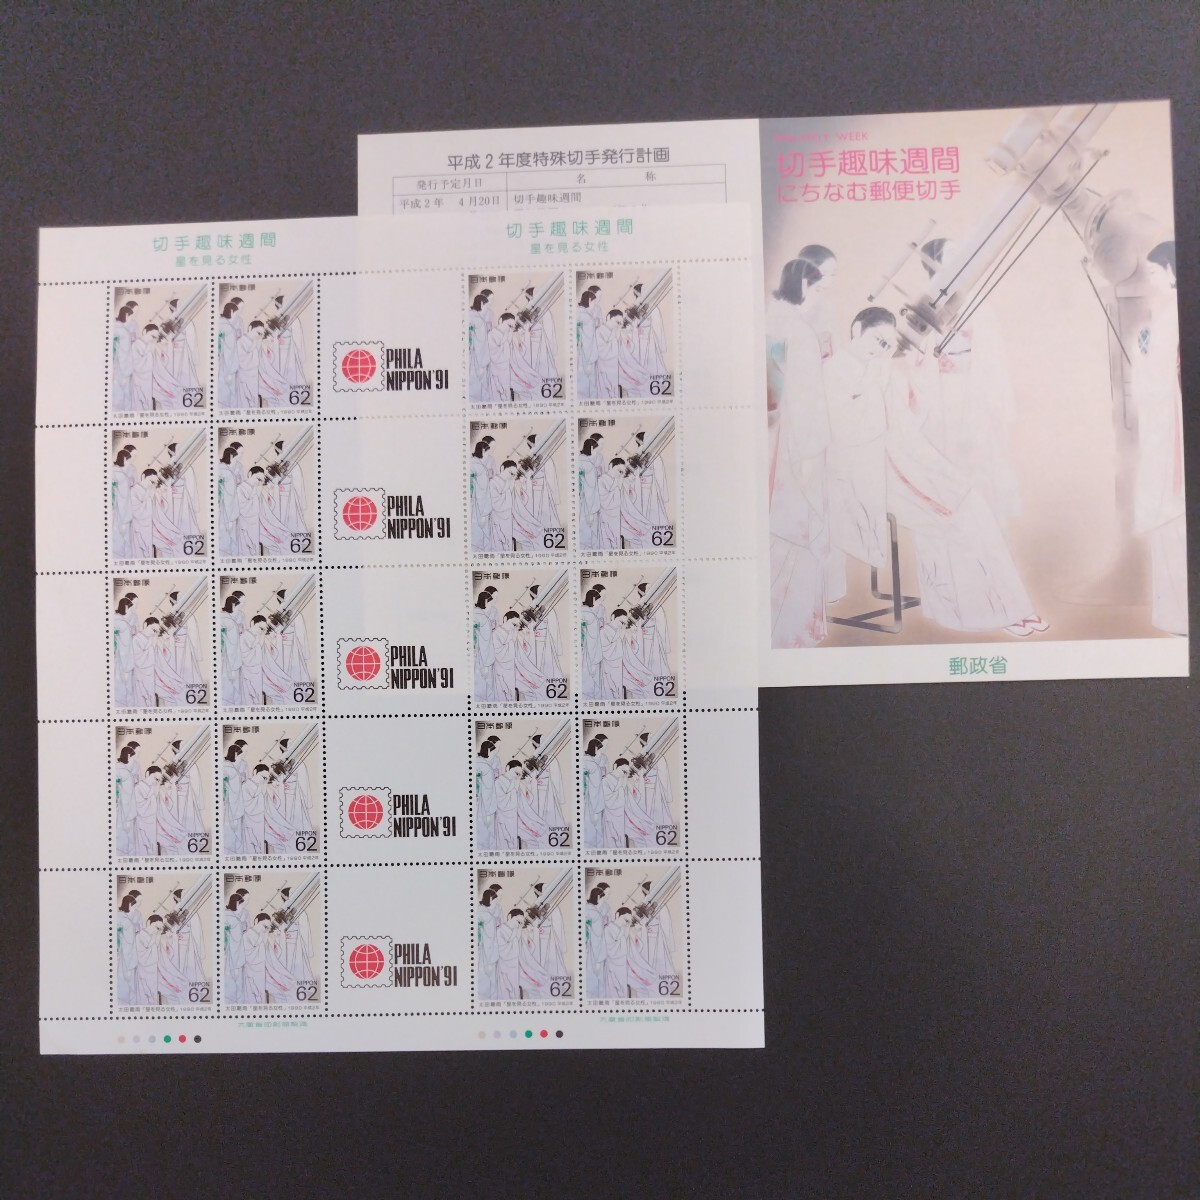 1990(平成2)年発行、切手趣味週間「星を見る女性・太田聴雨の作品亅、62円20枚、1シート、額面1,240円。リーフレット付き。の画像1